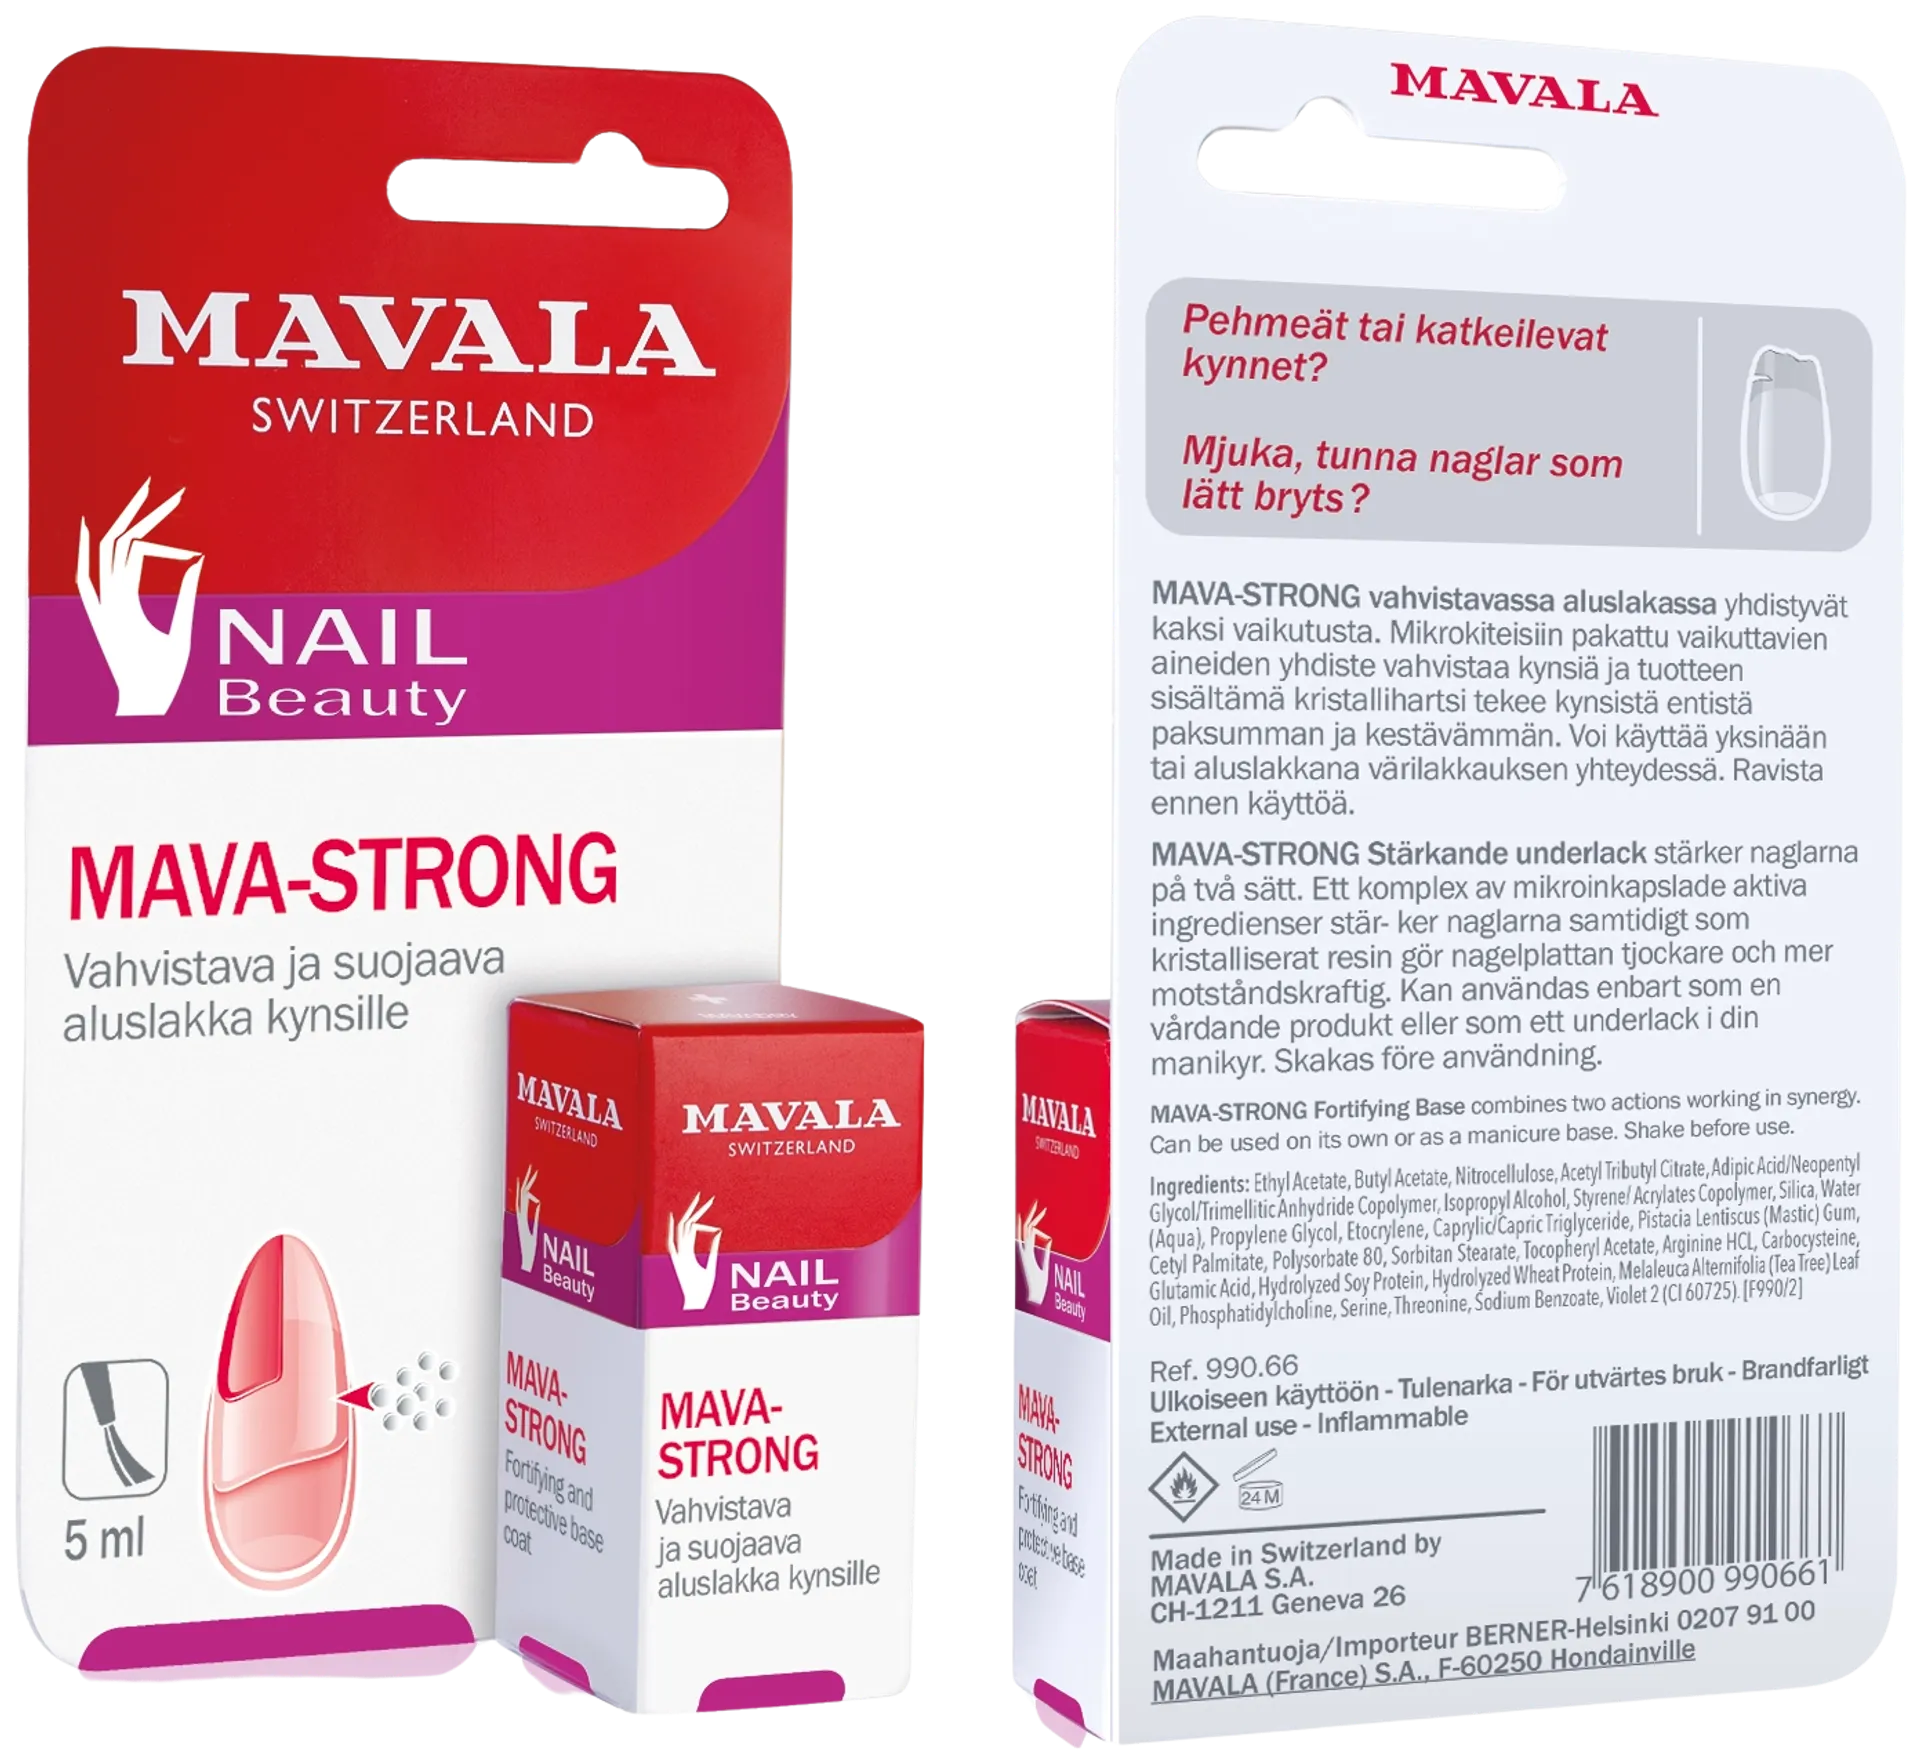 Mavala Mava-Strong vahvistava ja suojaava aluslakka, 5 ml